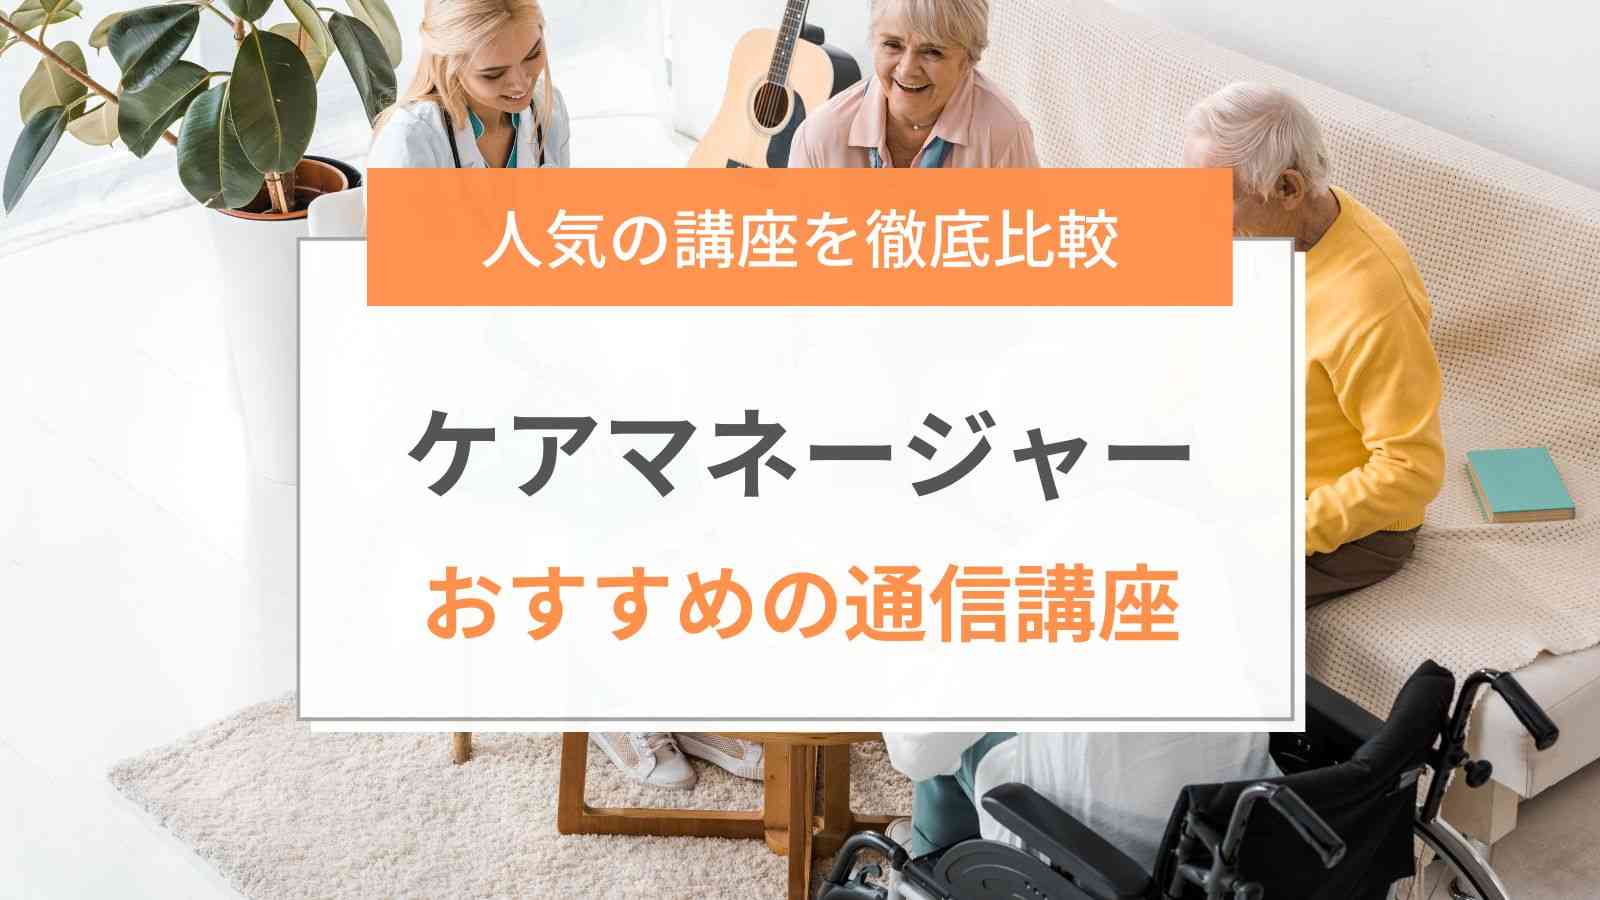 U-CAN》ケアマネージャー講座 sloap.com